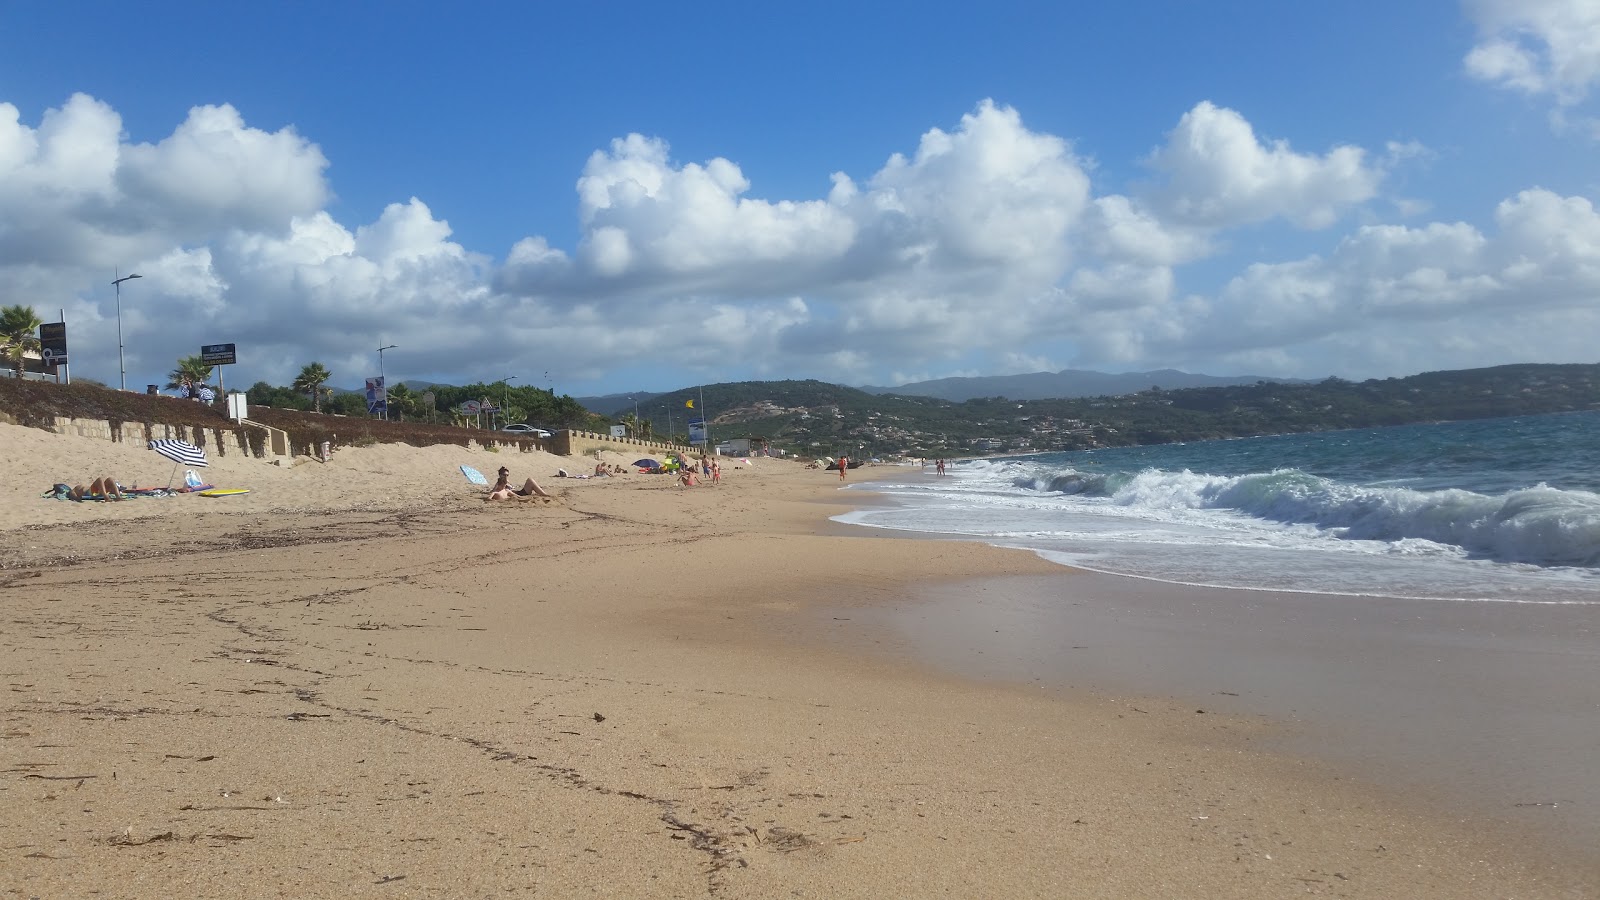 Φωτογραφία του Agosta beach με επίπεδο καθαριότητας πολύ καθαρό